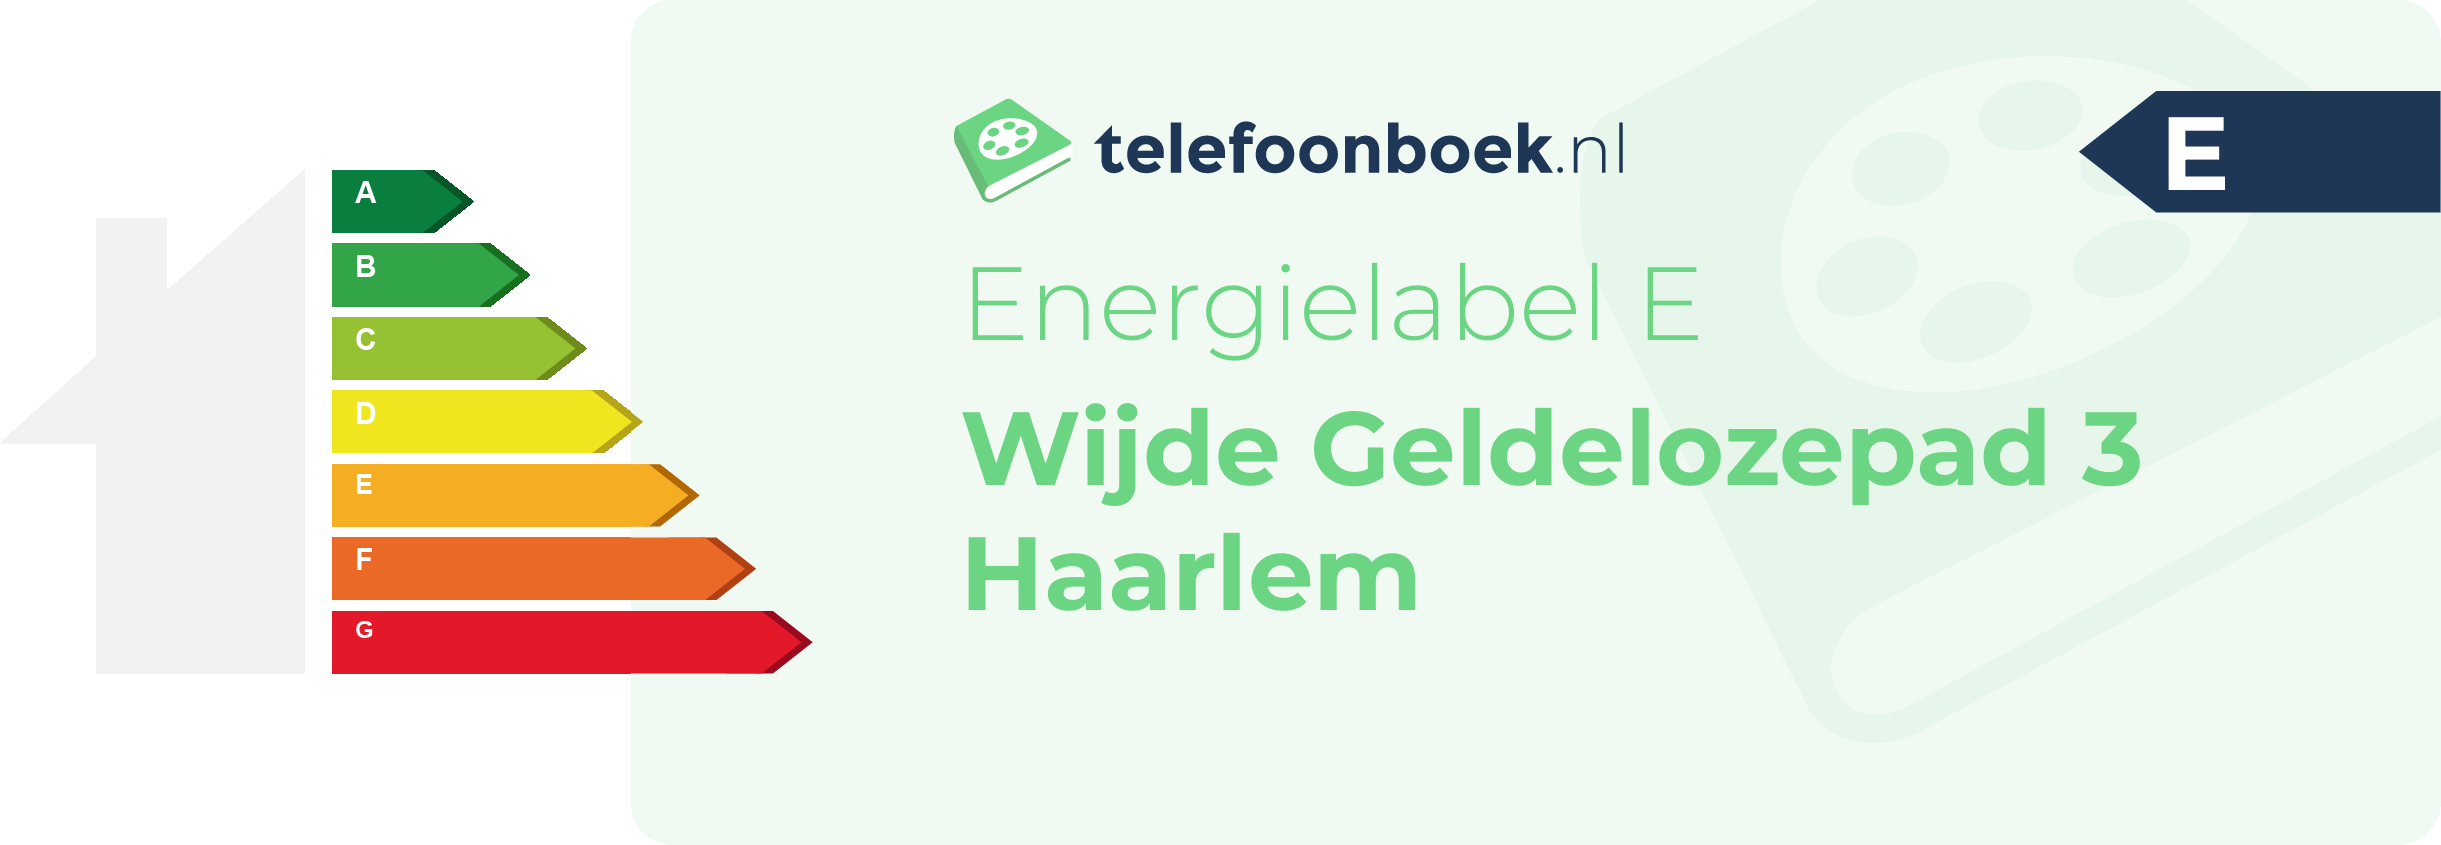 Energielabel Wijde Geldelozepad 3 Haarlem